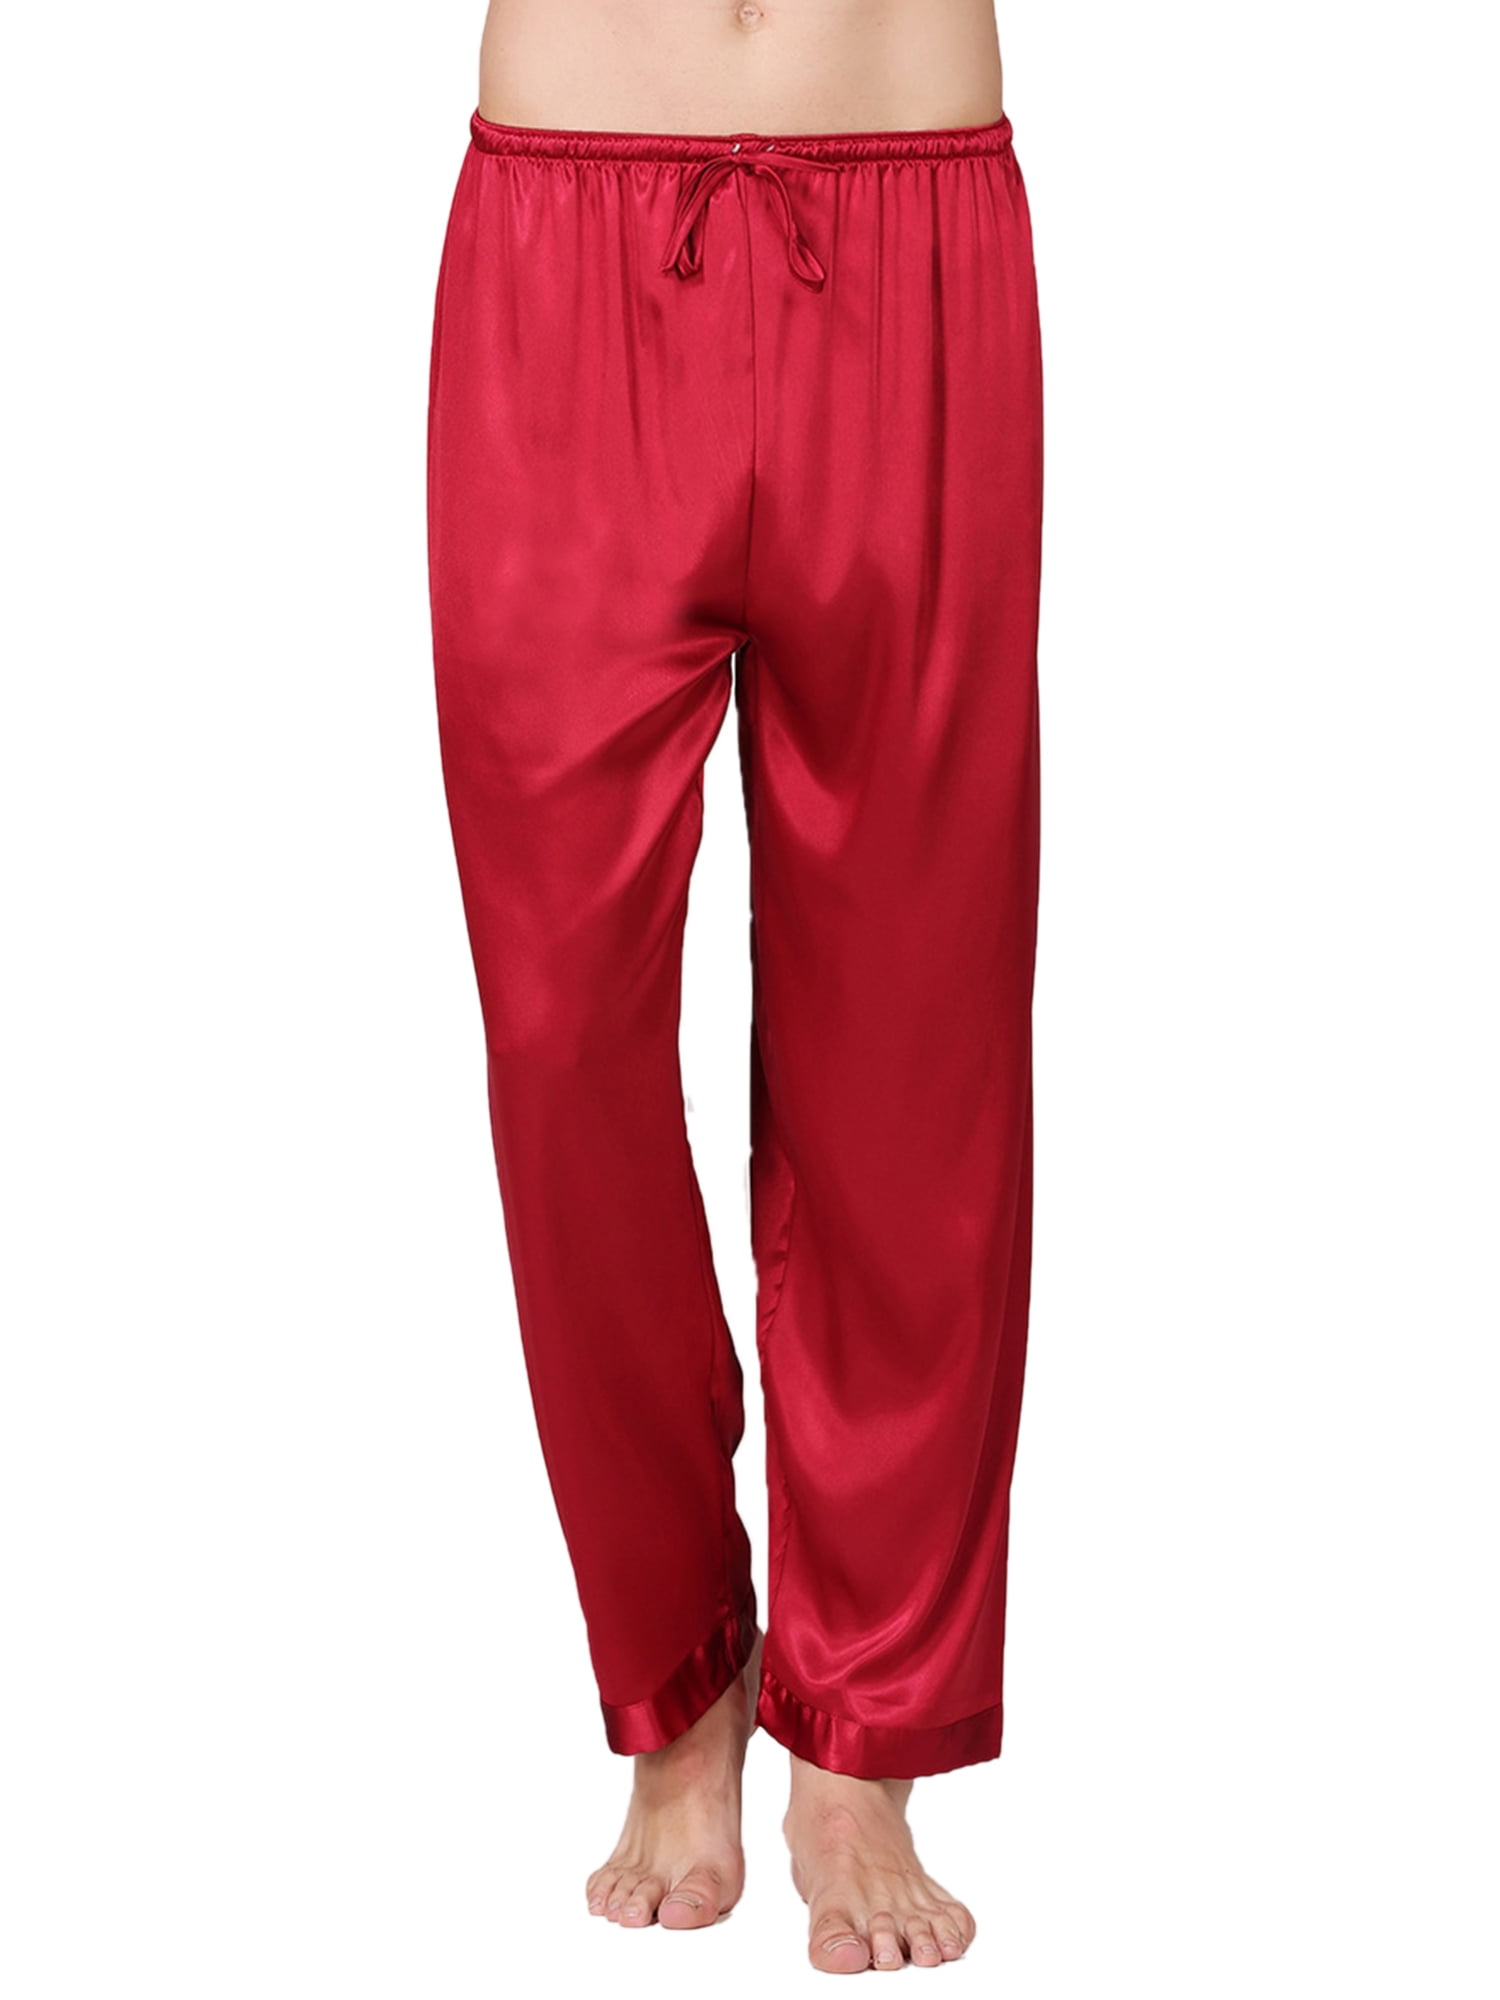 Mens Silk Satin Pajamas Pyjamas Pants Sleep Bottoms Nightwear Sleepwear Trousers